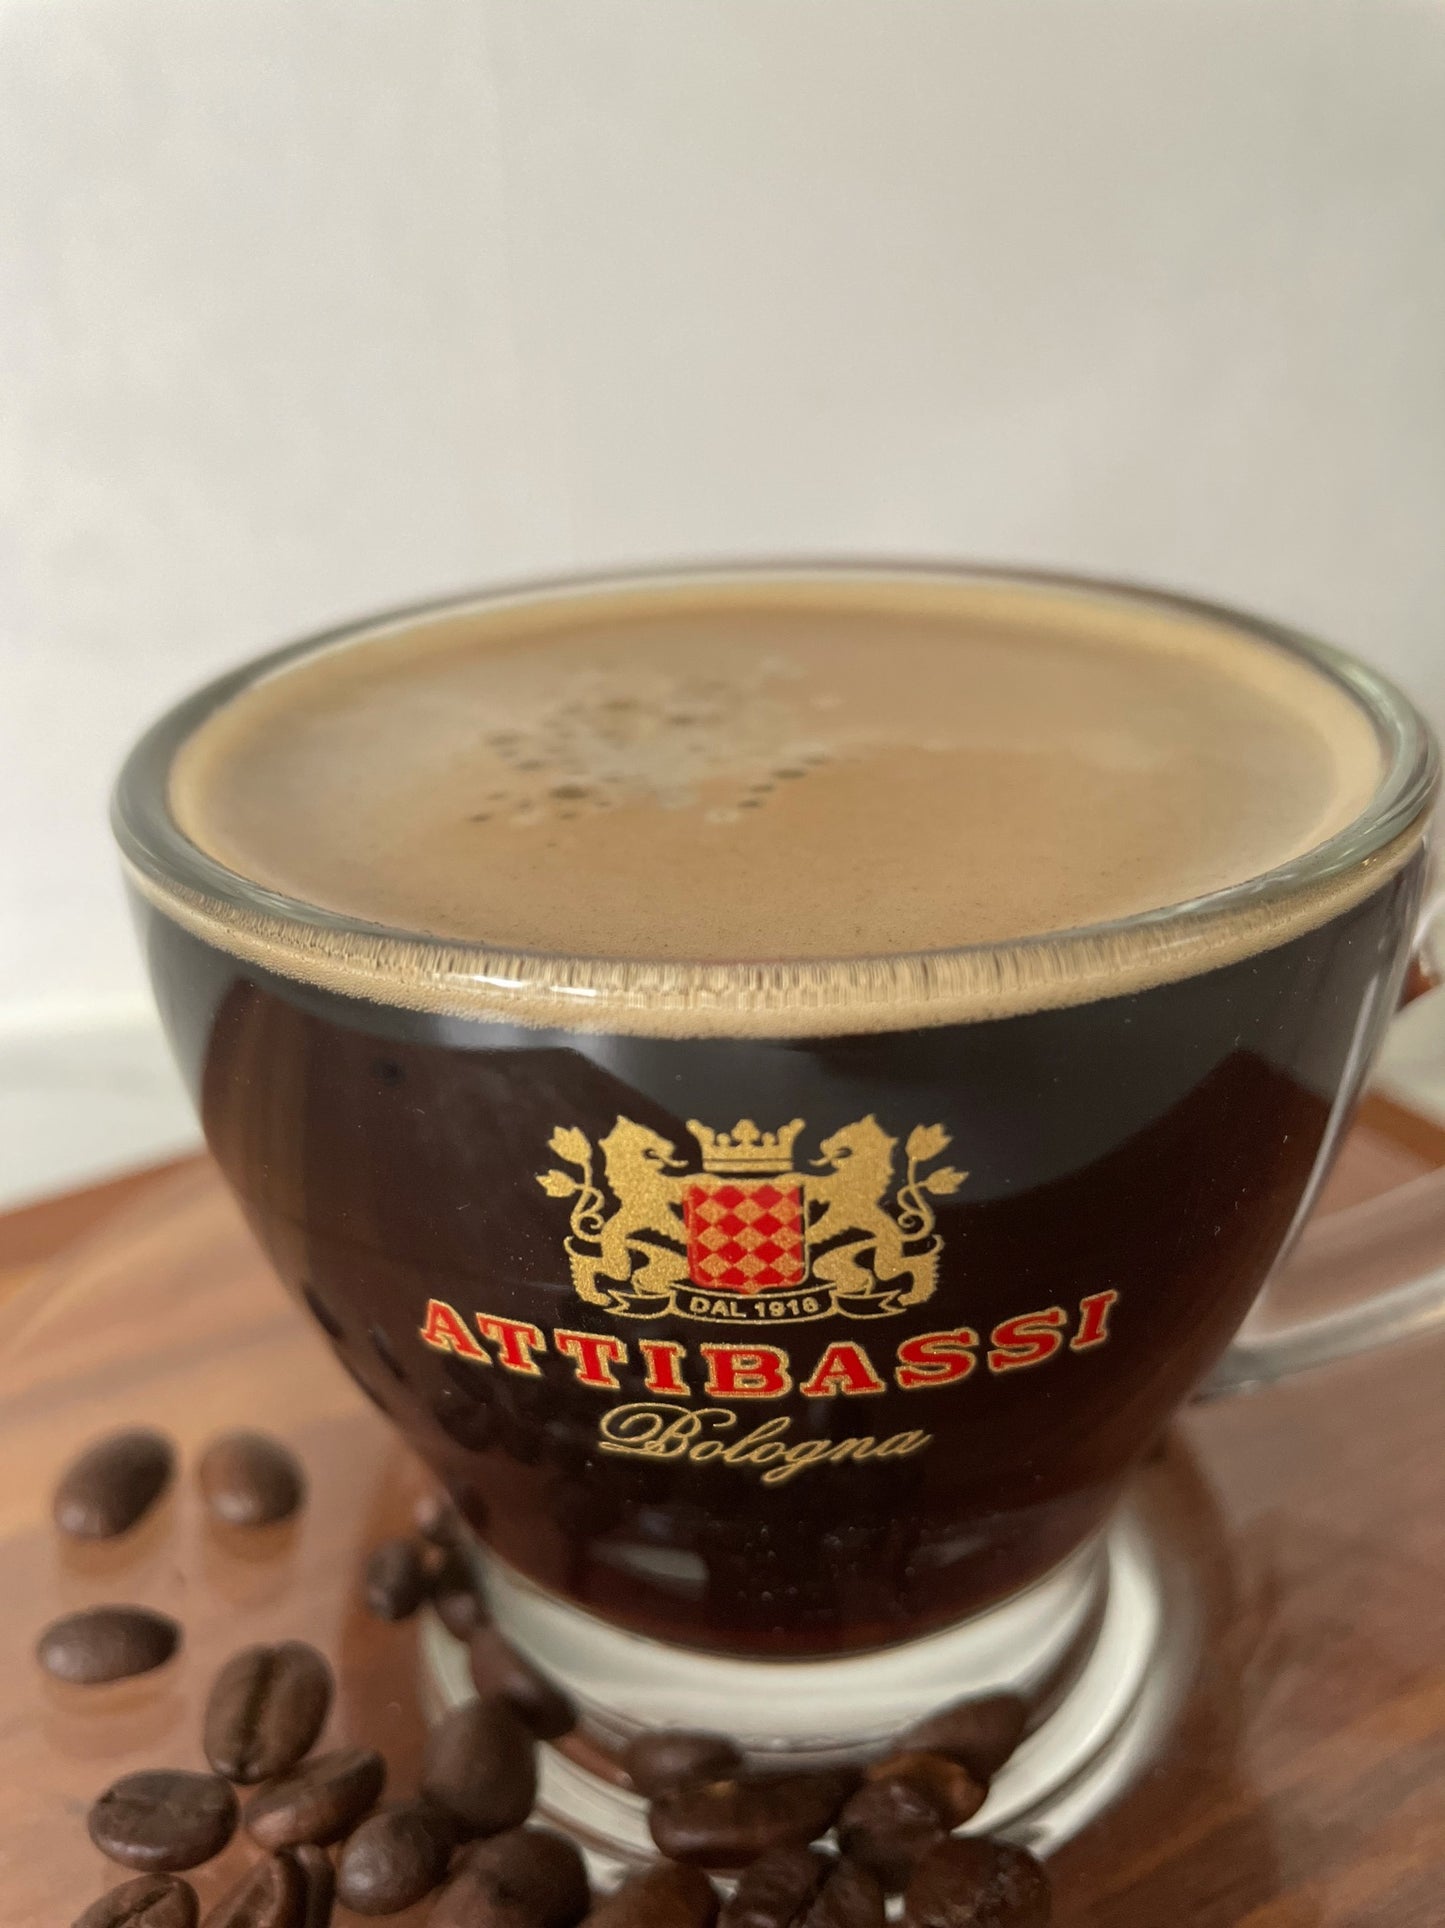 Attibassi Espresso Italiano